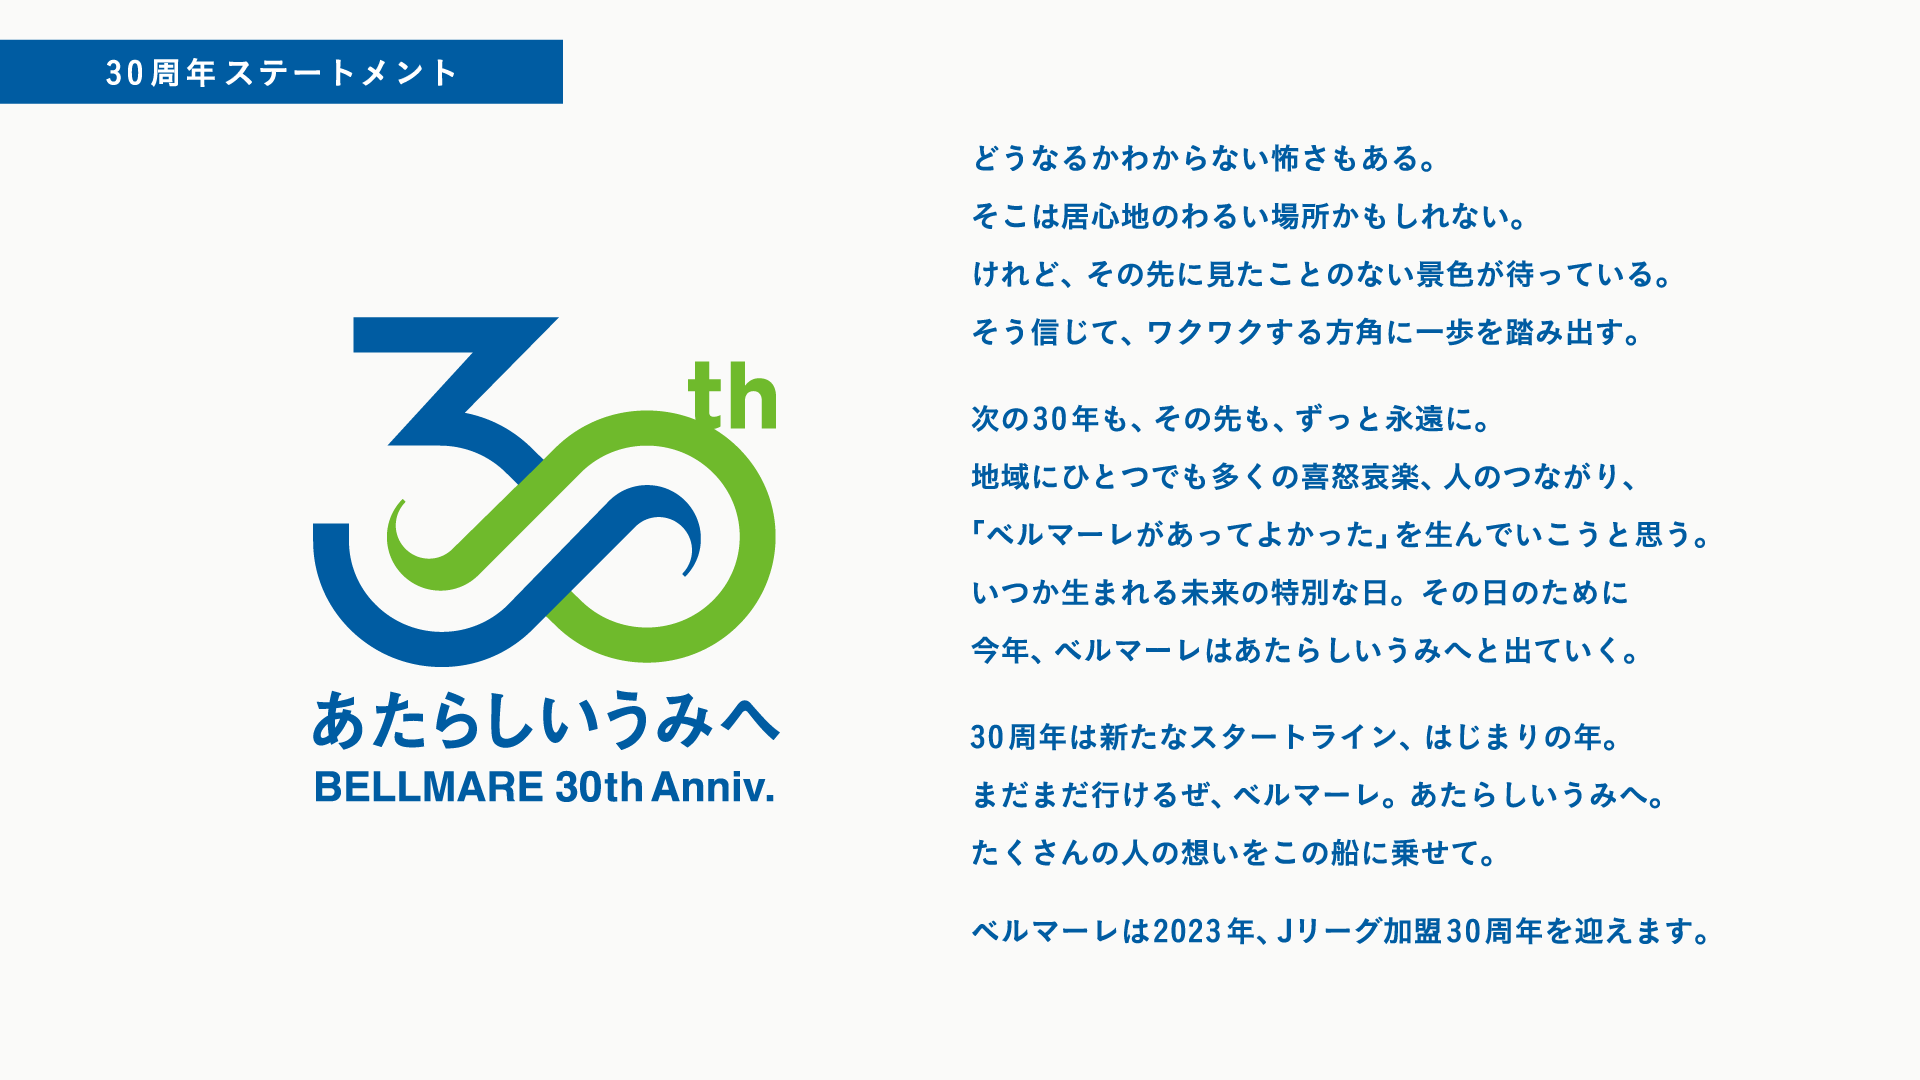 湘南ベルマーレ Jリーグ加盟30周年記念事業実施決定のお知らせ 湘南ベルマーレ公式サイト